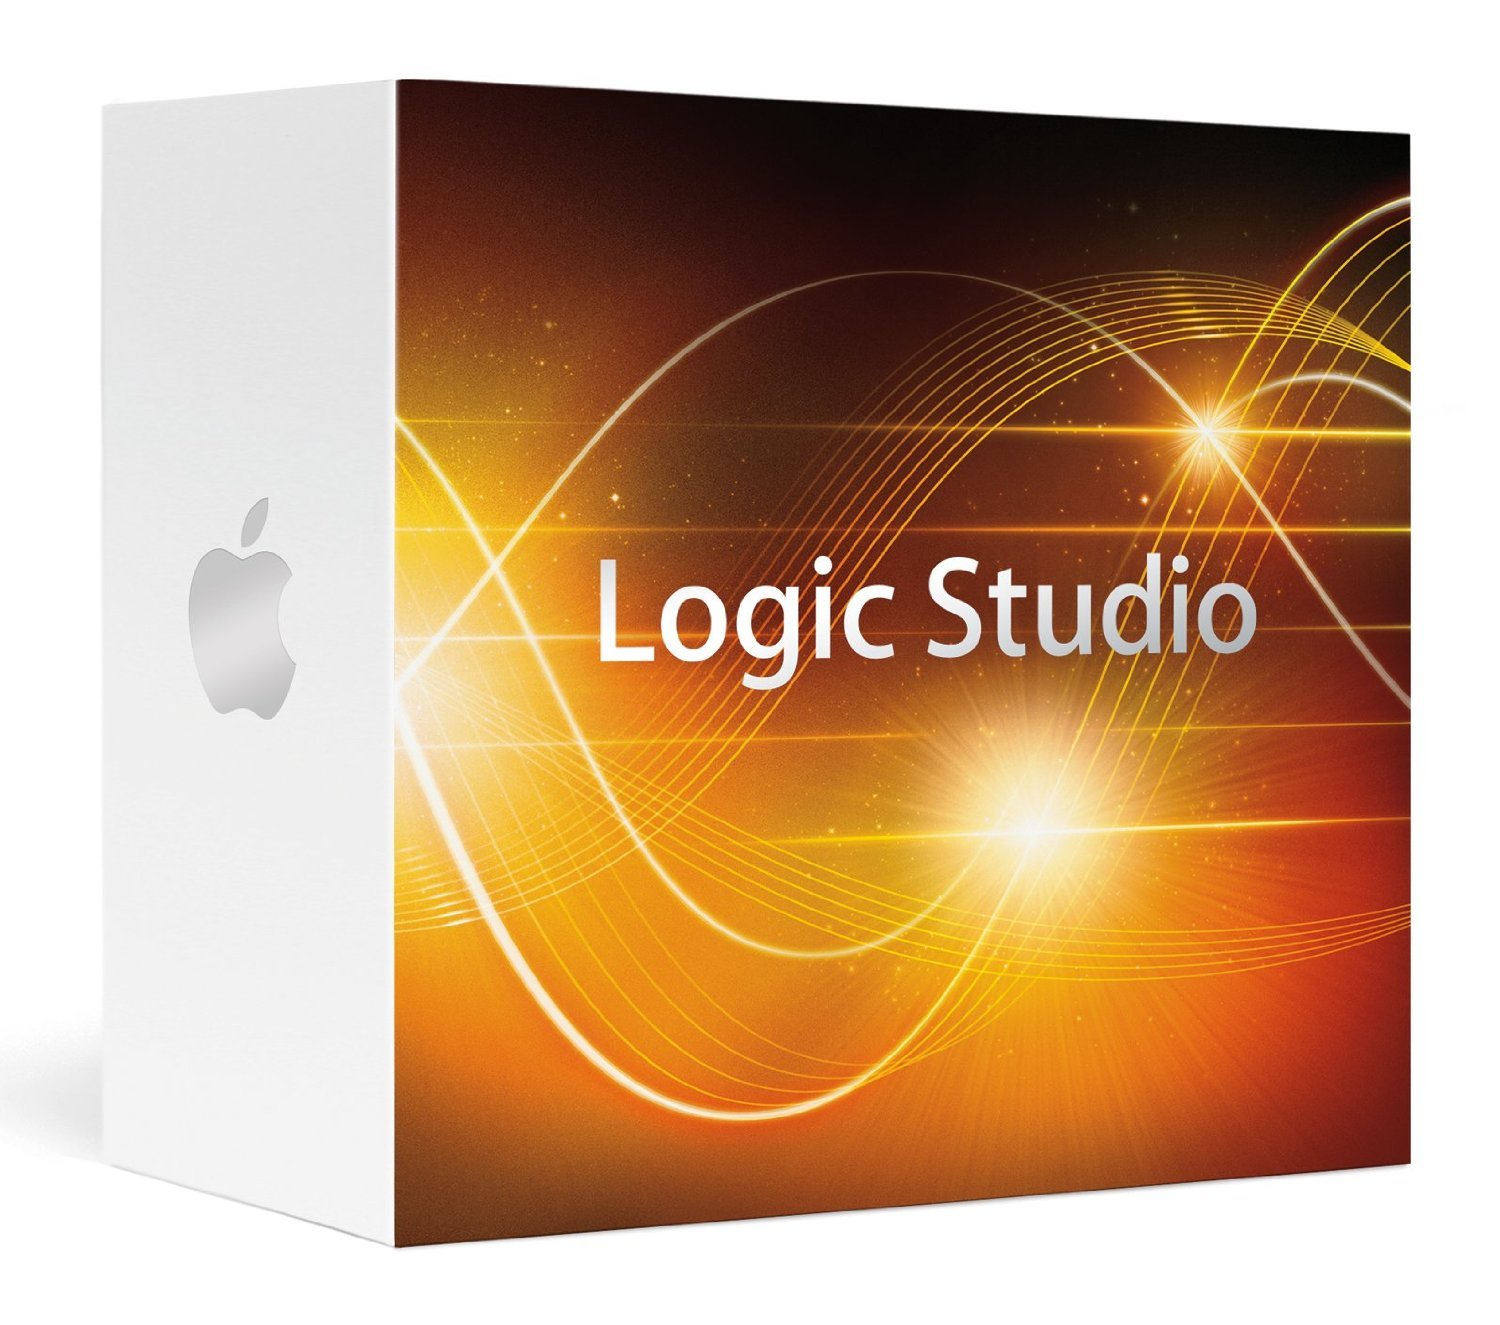 logic express 9 serial number download free